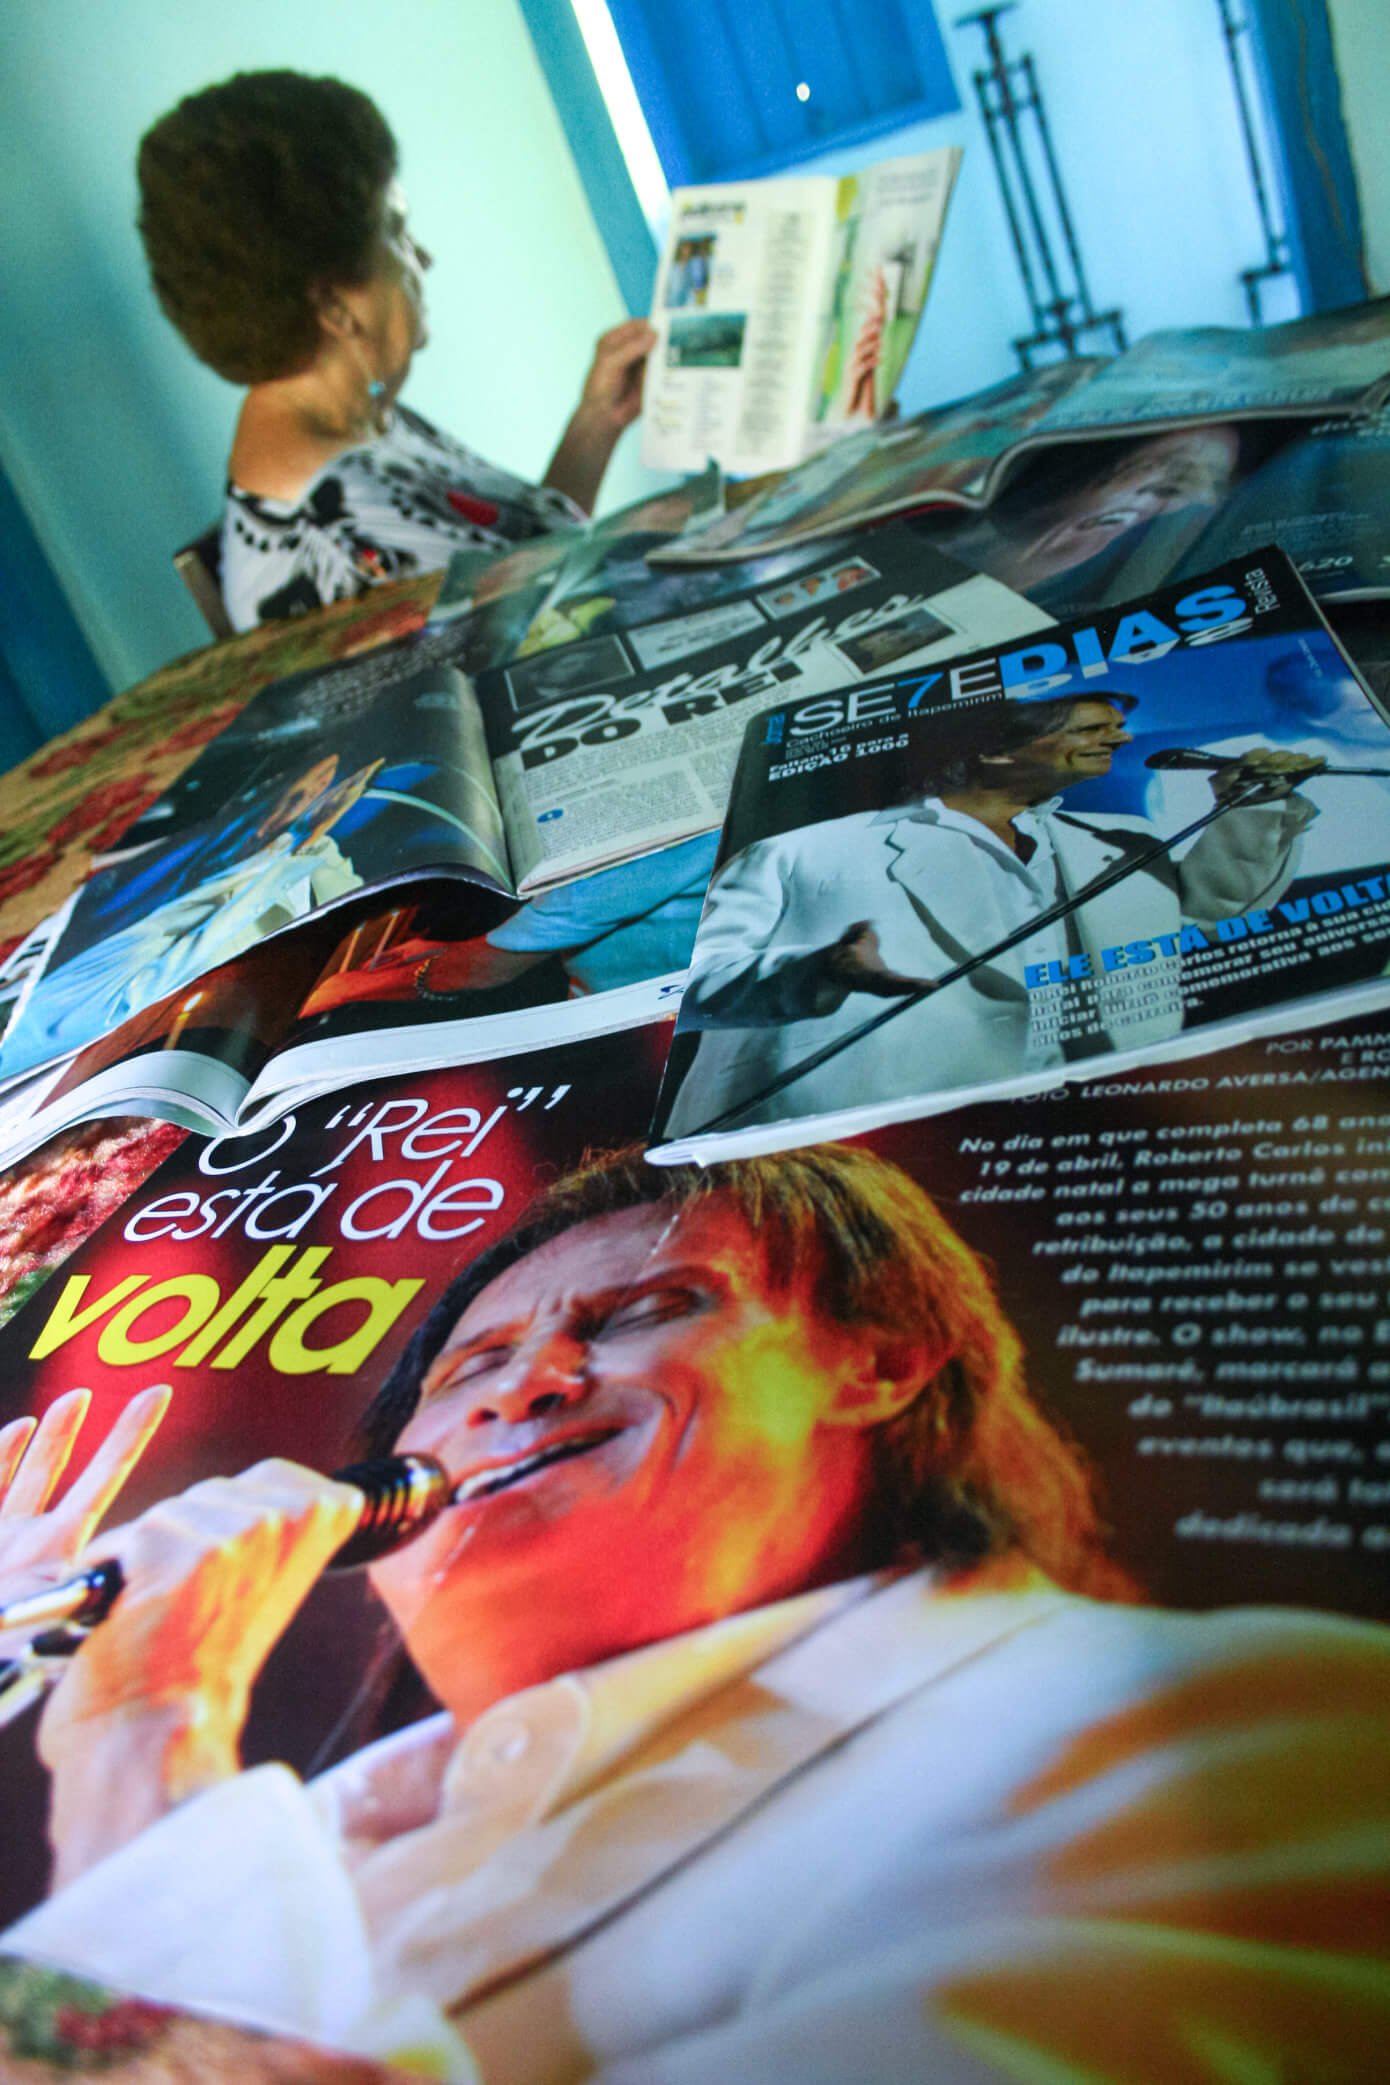 A imagem mostra Gercy Volpato lendo uma revista em meio a várias revistas espalhadas em uma mesa.